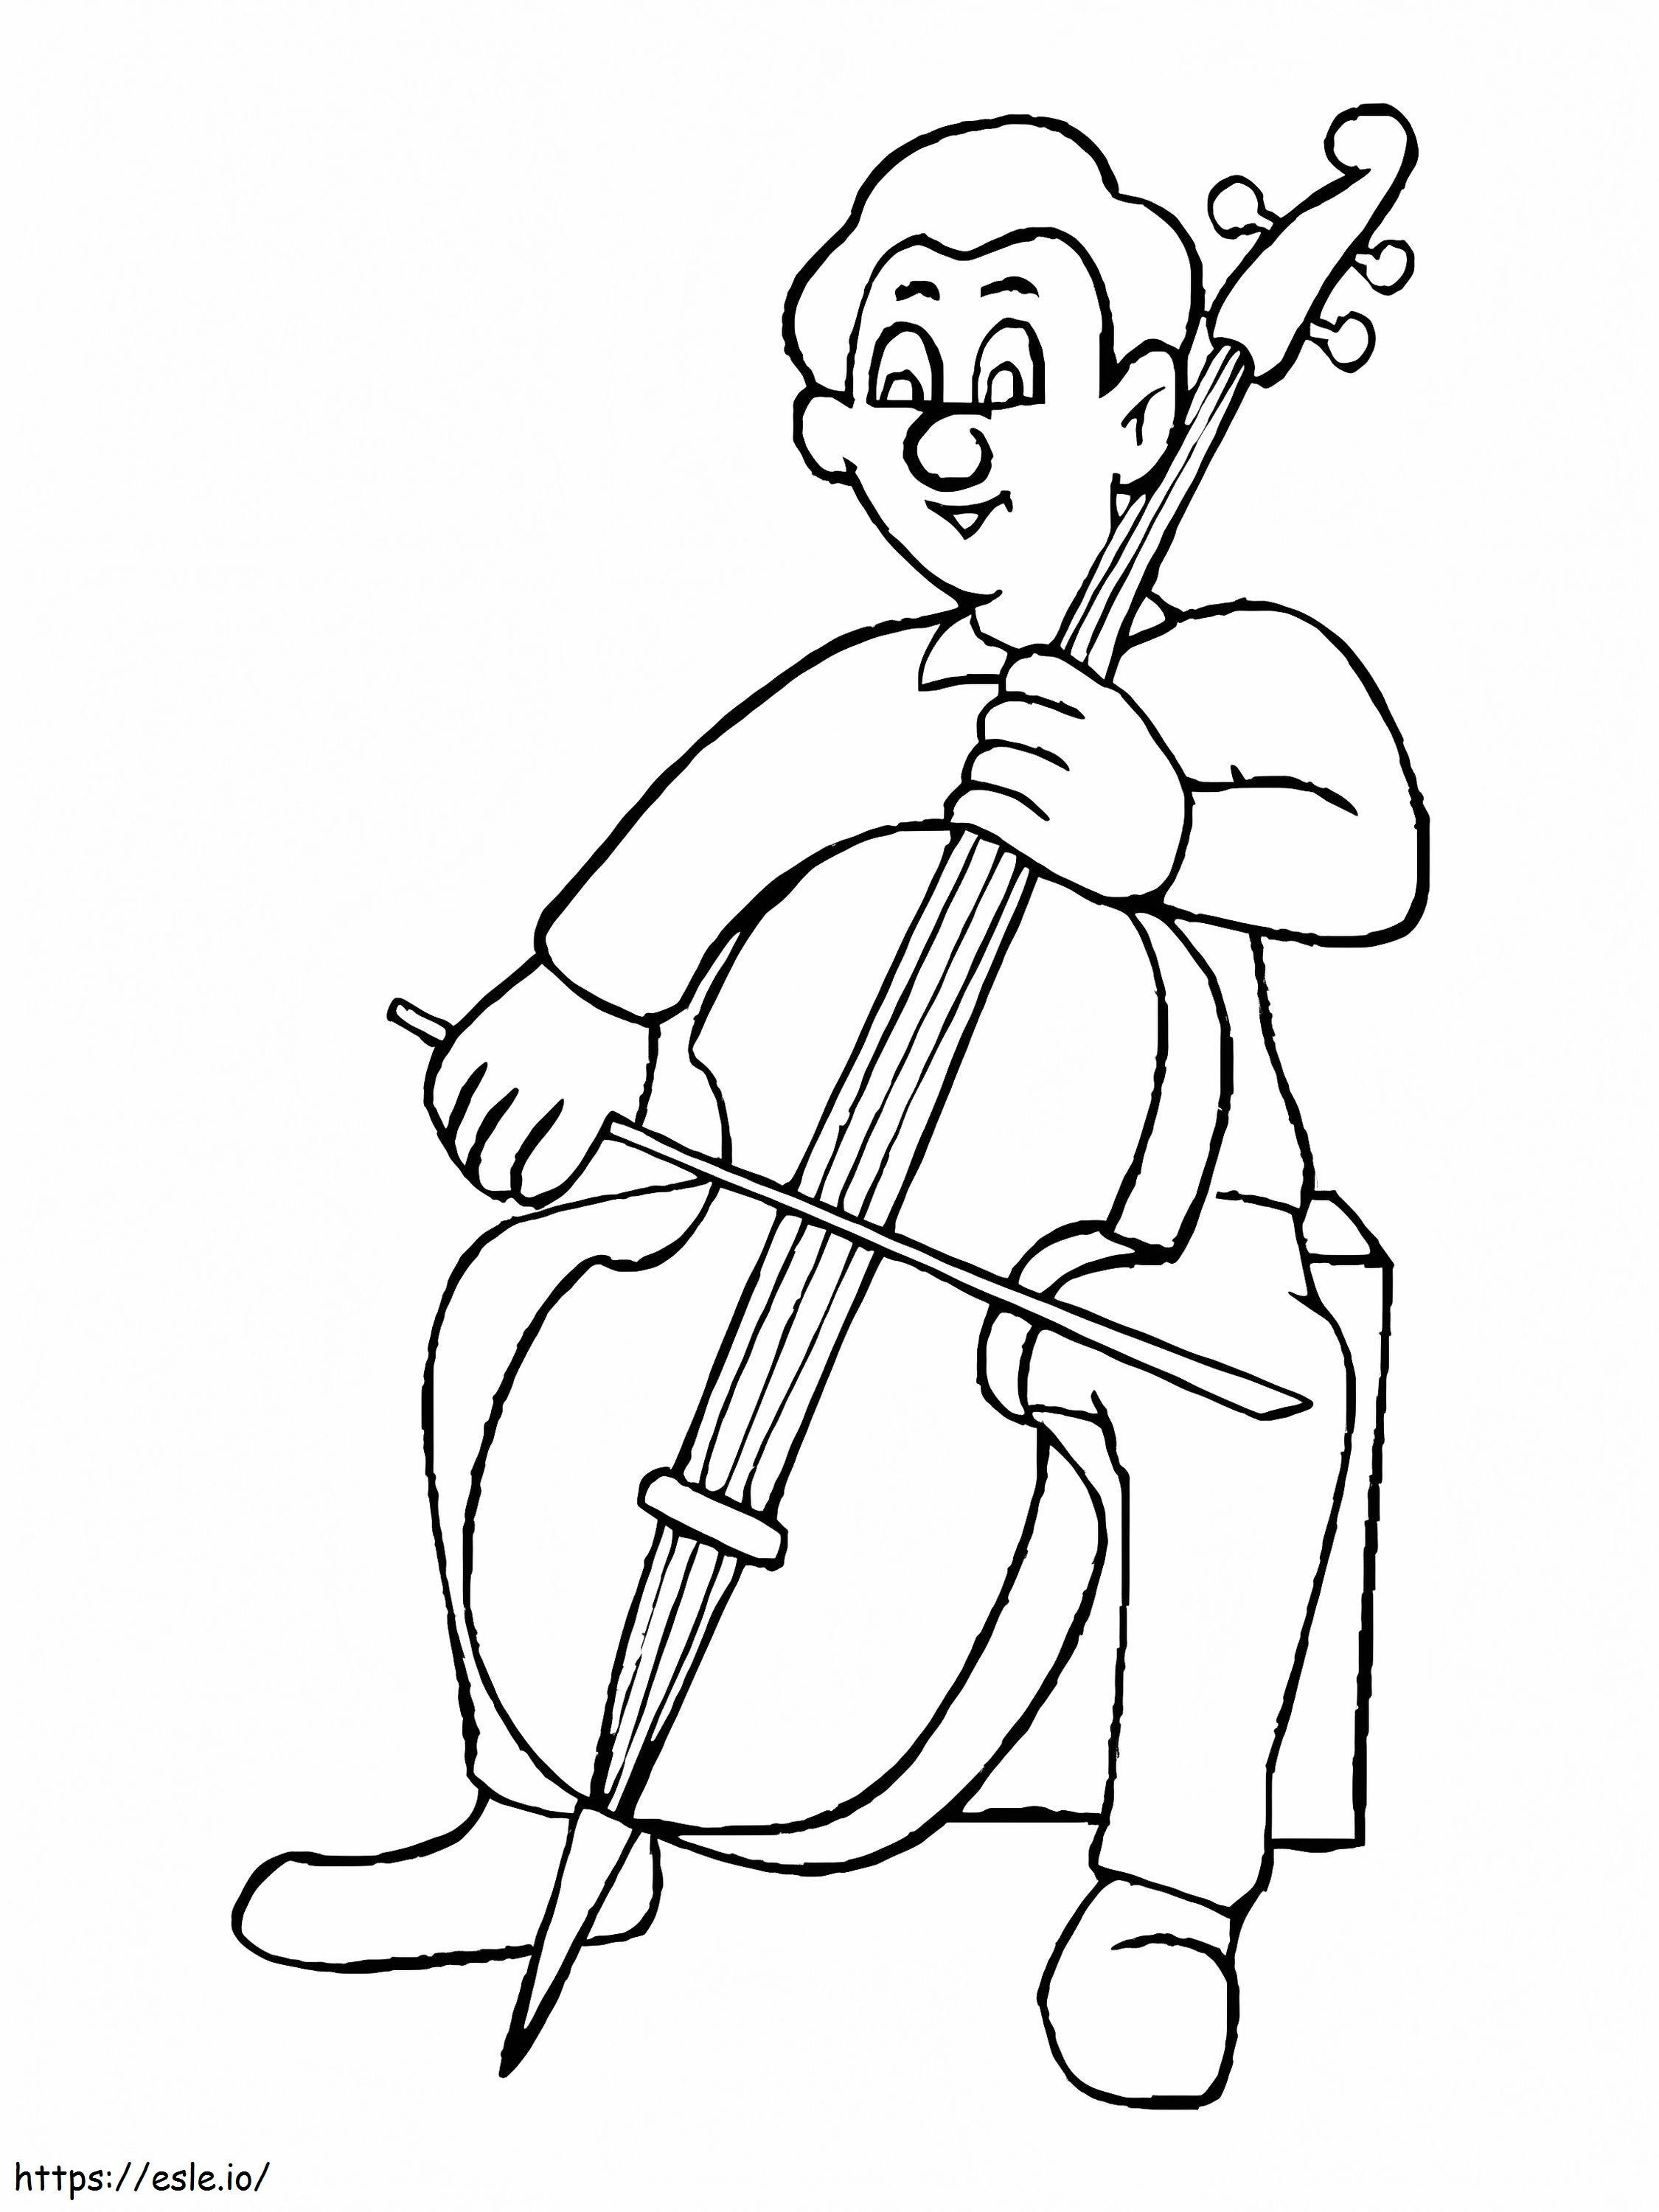 Uomo che suona il violoncello da colorare